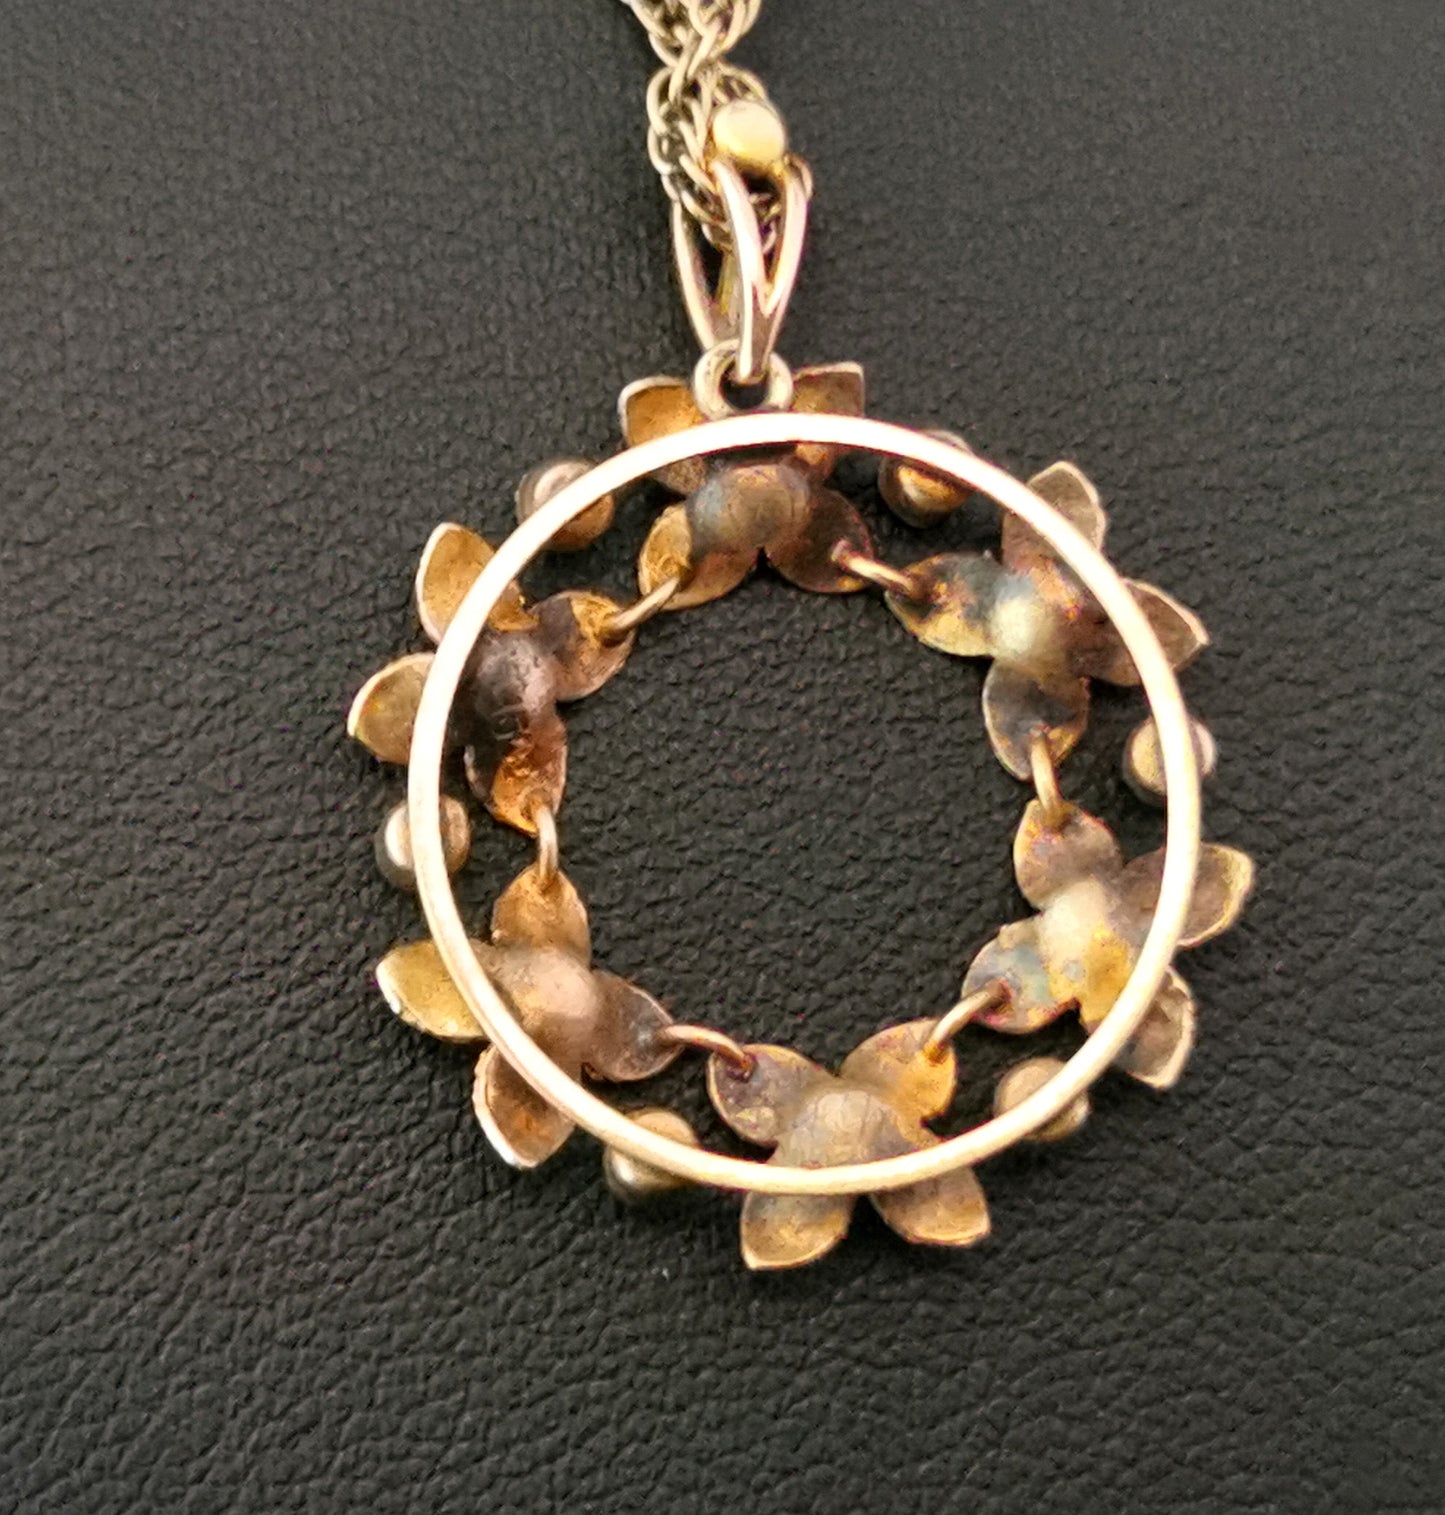 Antique Art Nouveau floral pendant, 15ct gold l, pearl and turquoise, necklace